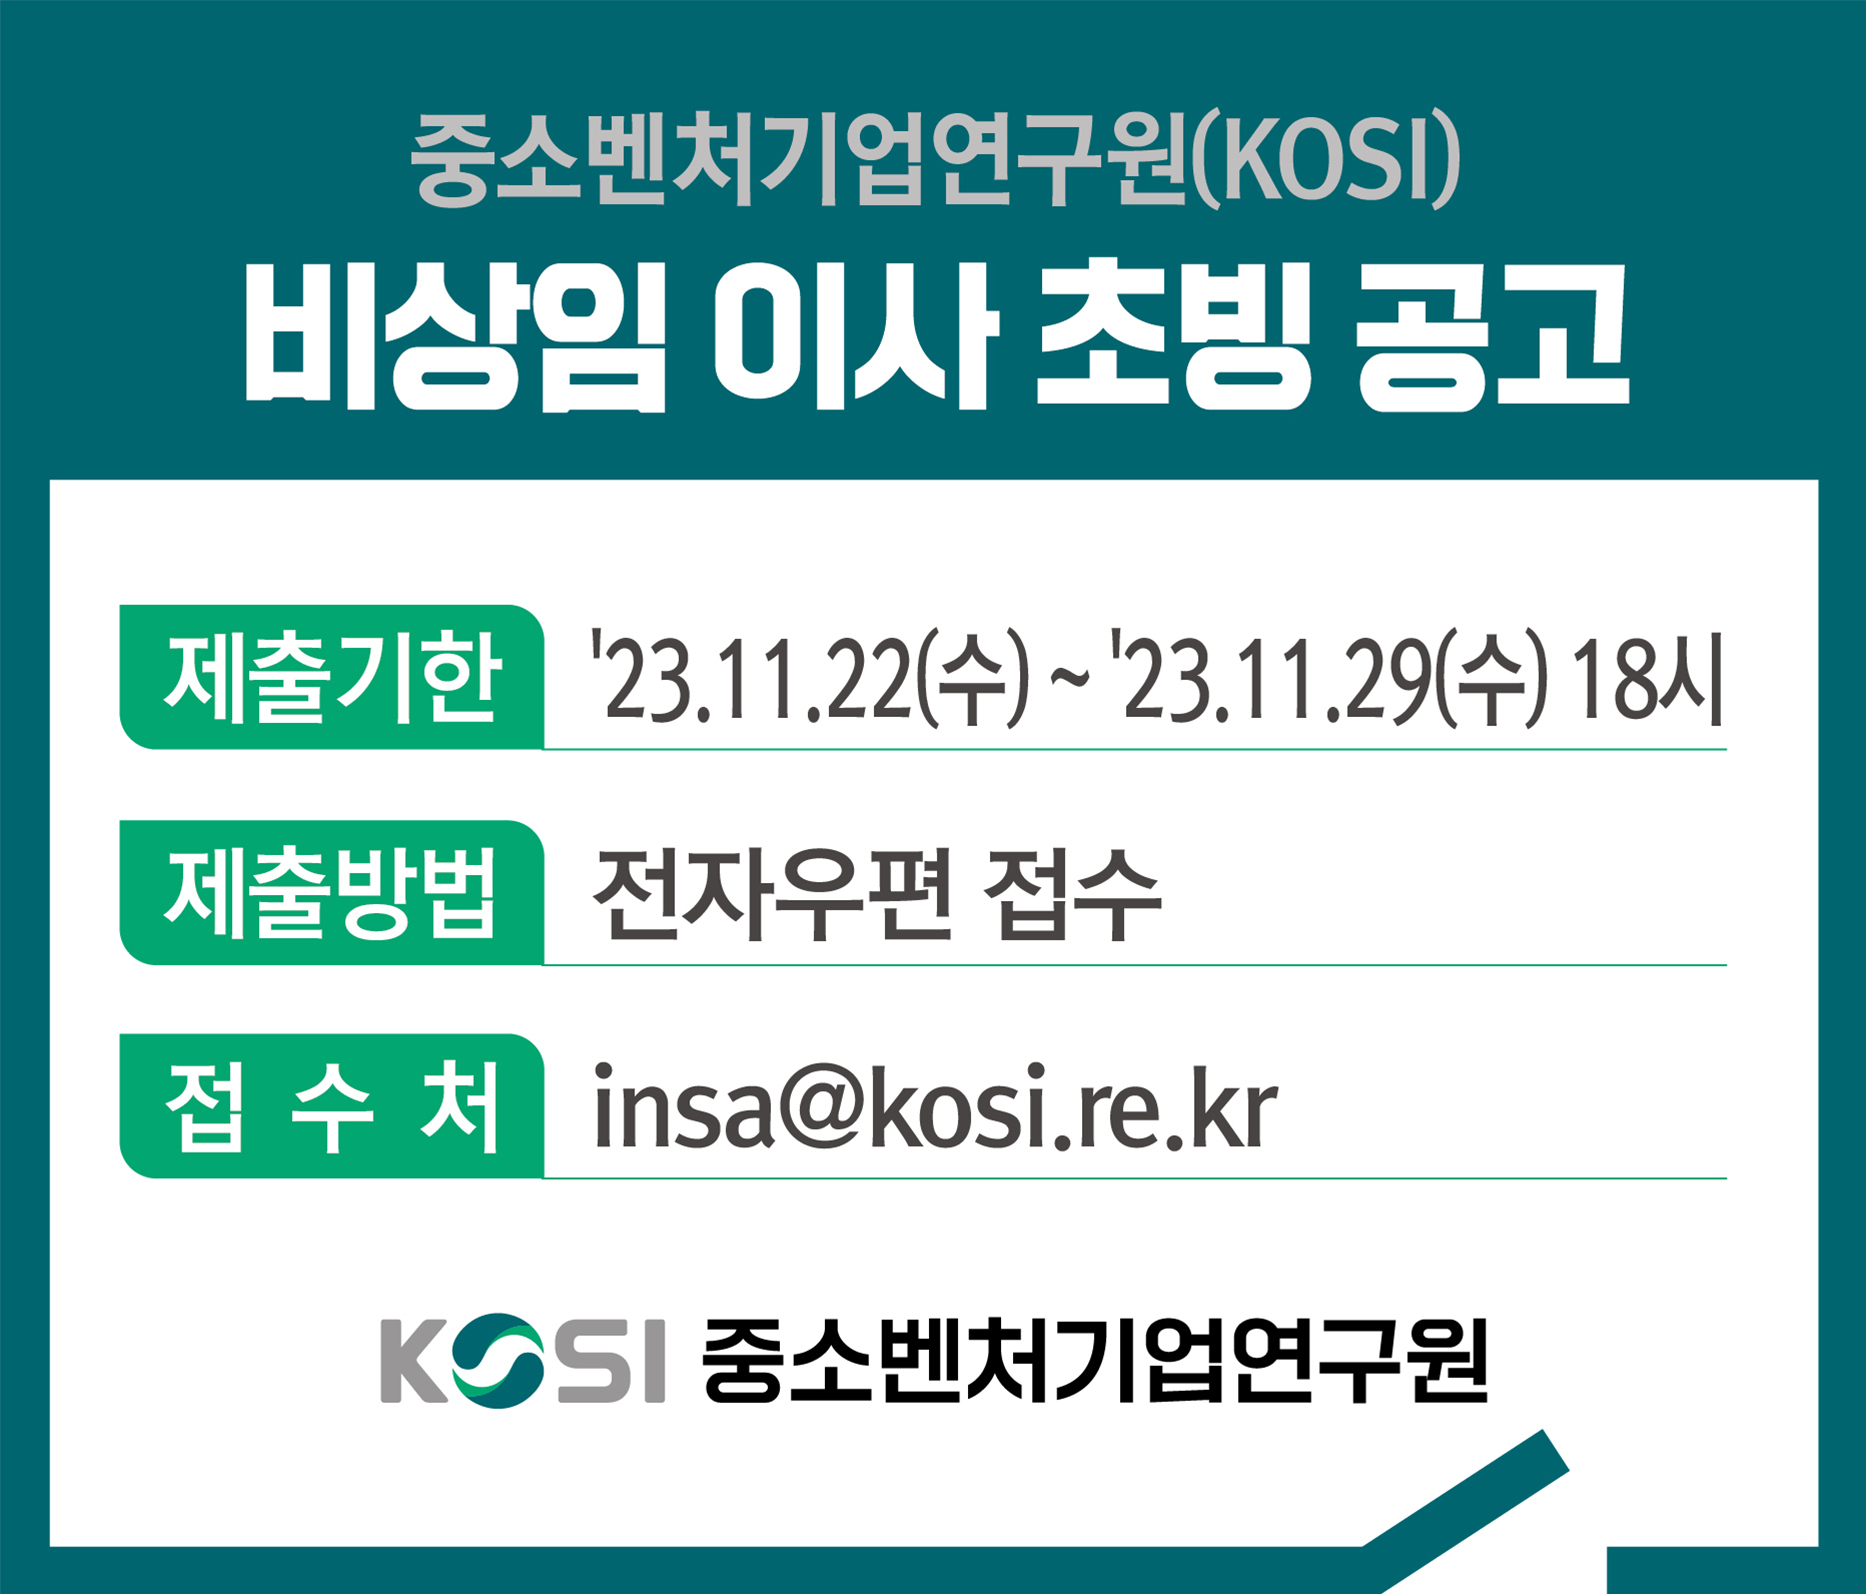 중소벤처기업연구원(KOSI)
비상임 이사 초빙 공고
제출기한 '23.11.22(수) ~ '23.11.29(수) 18시
제출방법 전자우편 접수
접수처 insa@kosi.re.kr
중소벤처기업연구원